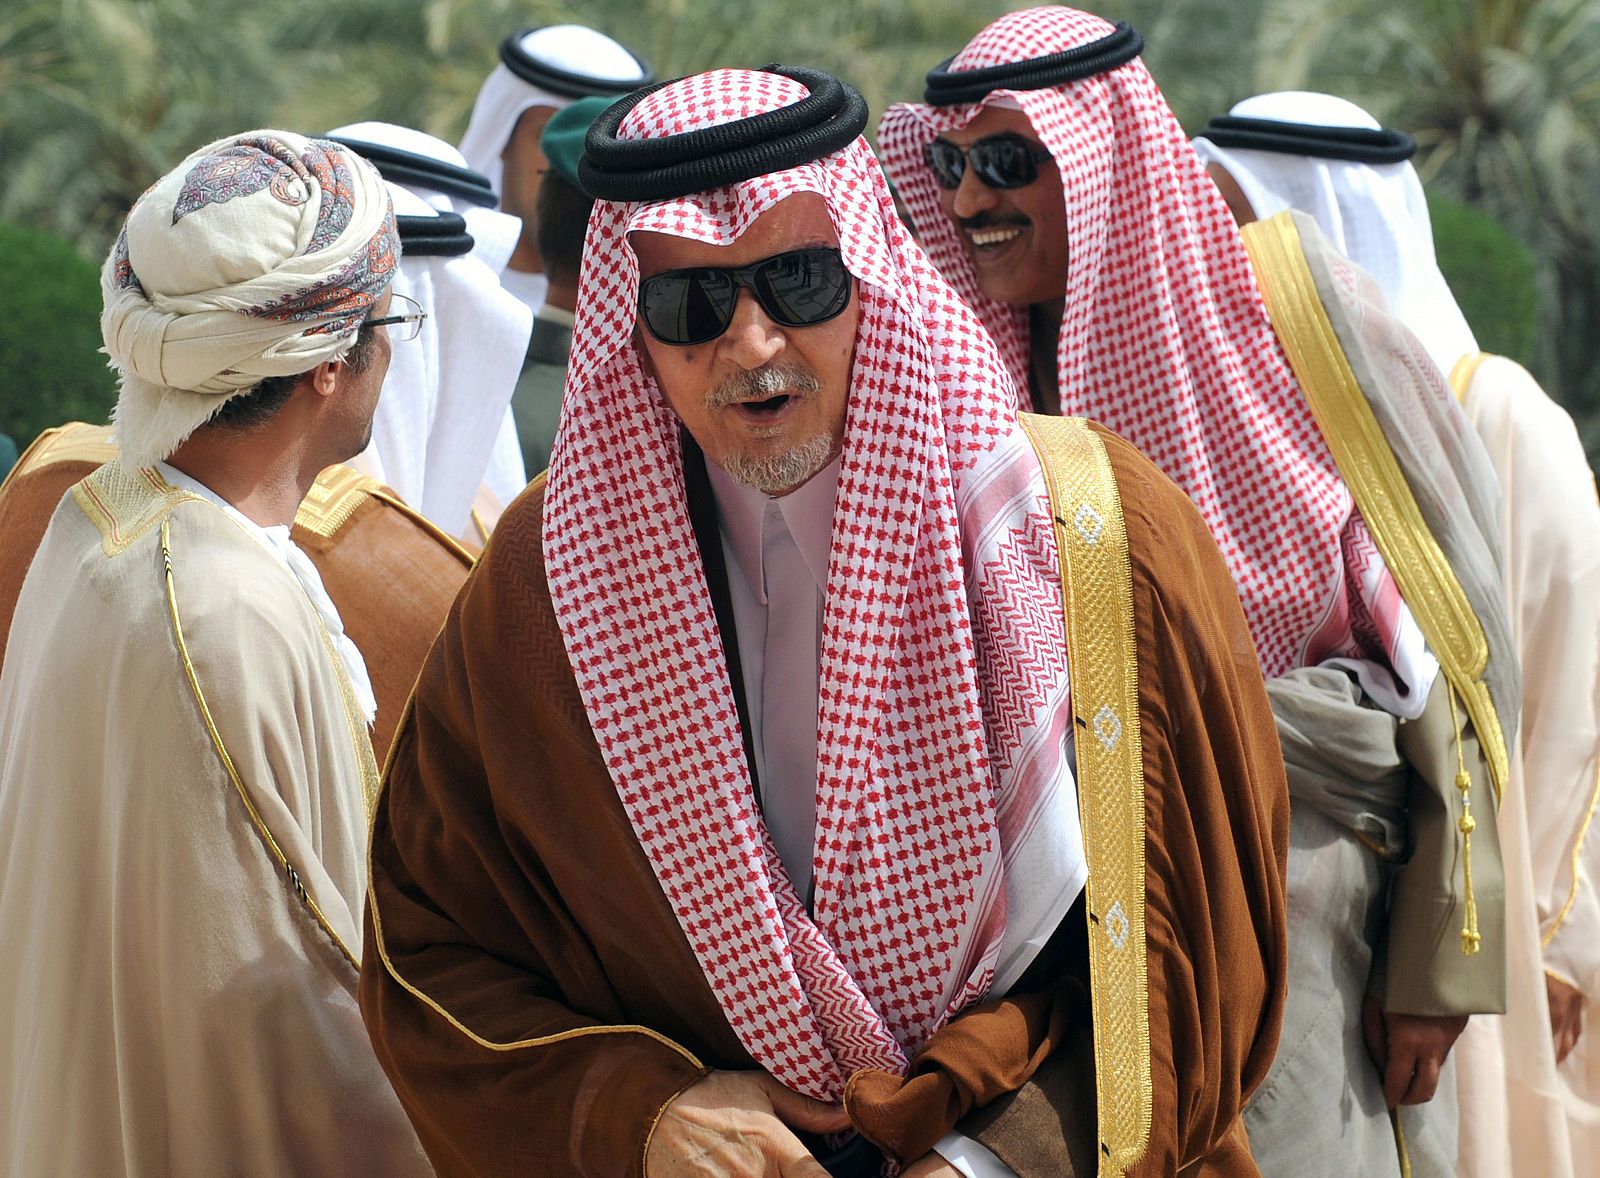 El príncipe Saud al-Faisal bin Abdulaziz, ministro de Exteriores saudí, asiste al Consejo de Cooperación del Golfo celebrado en Riad esta semana.